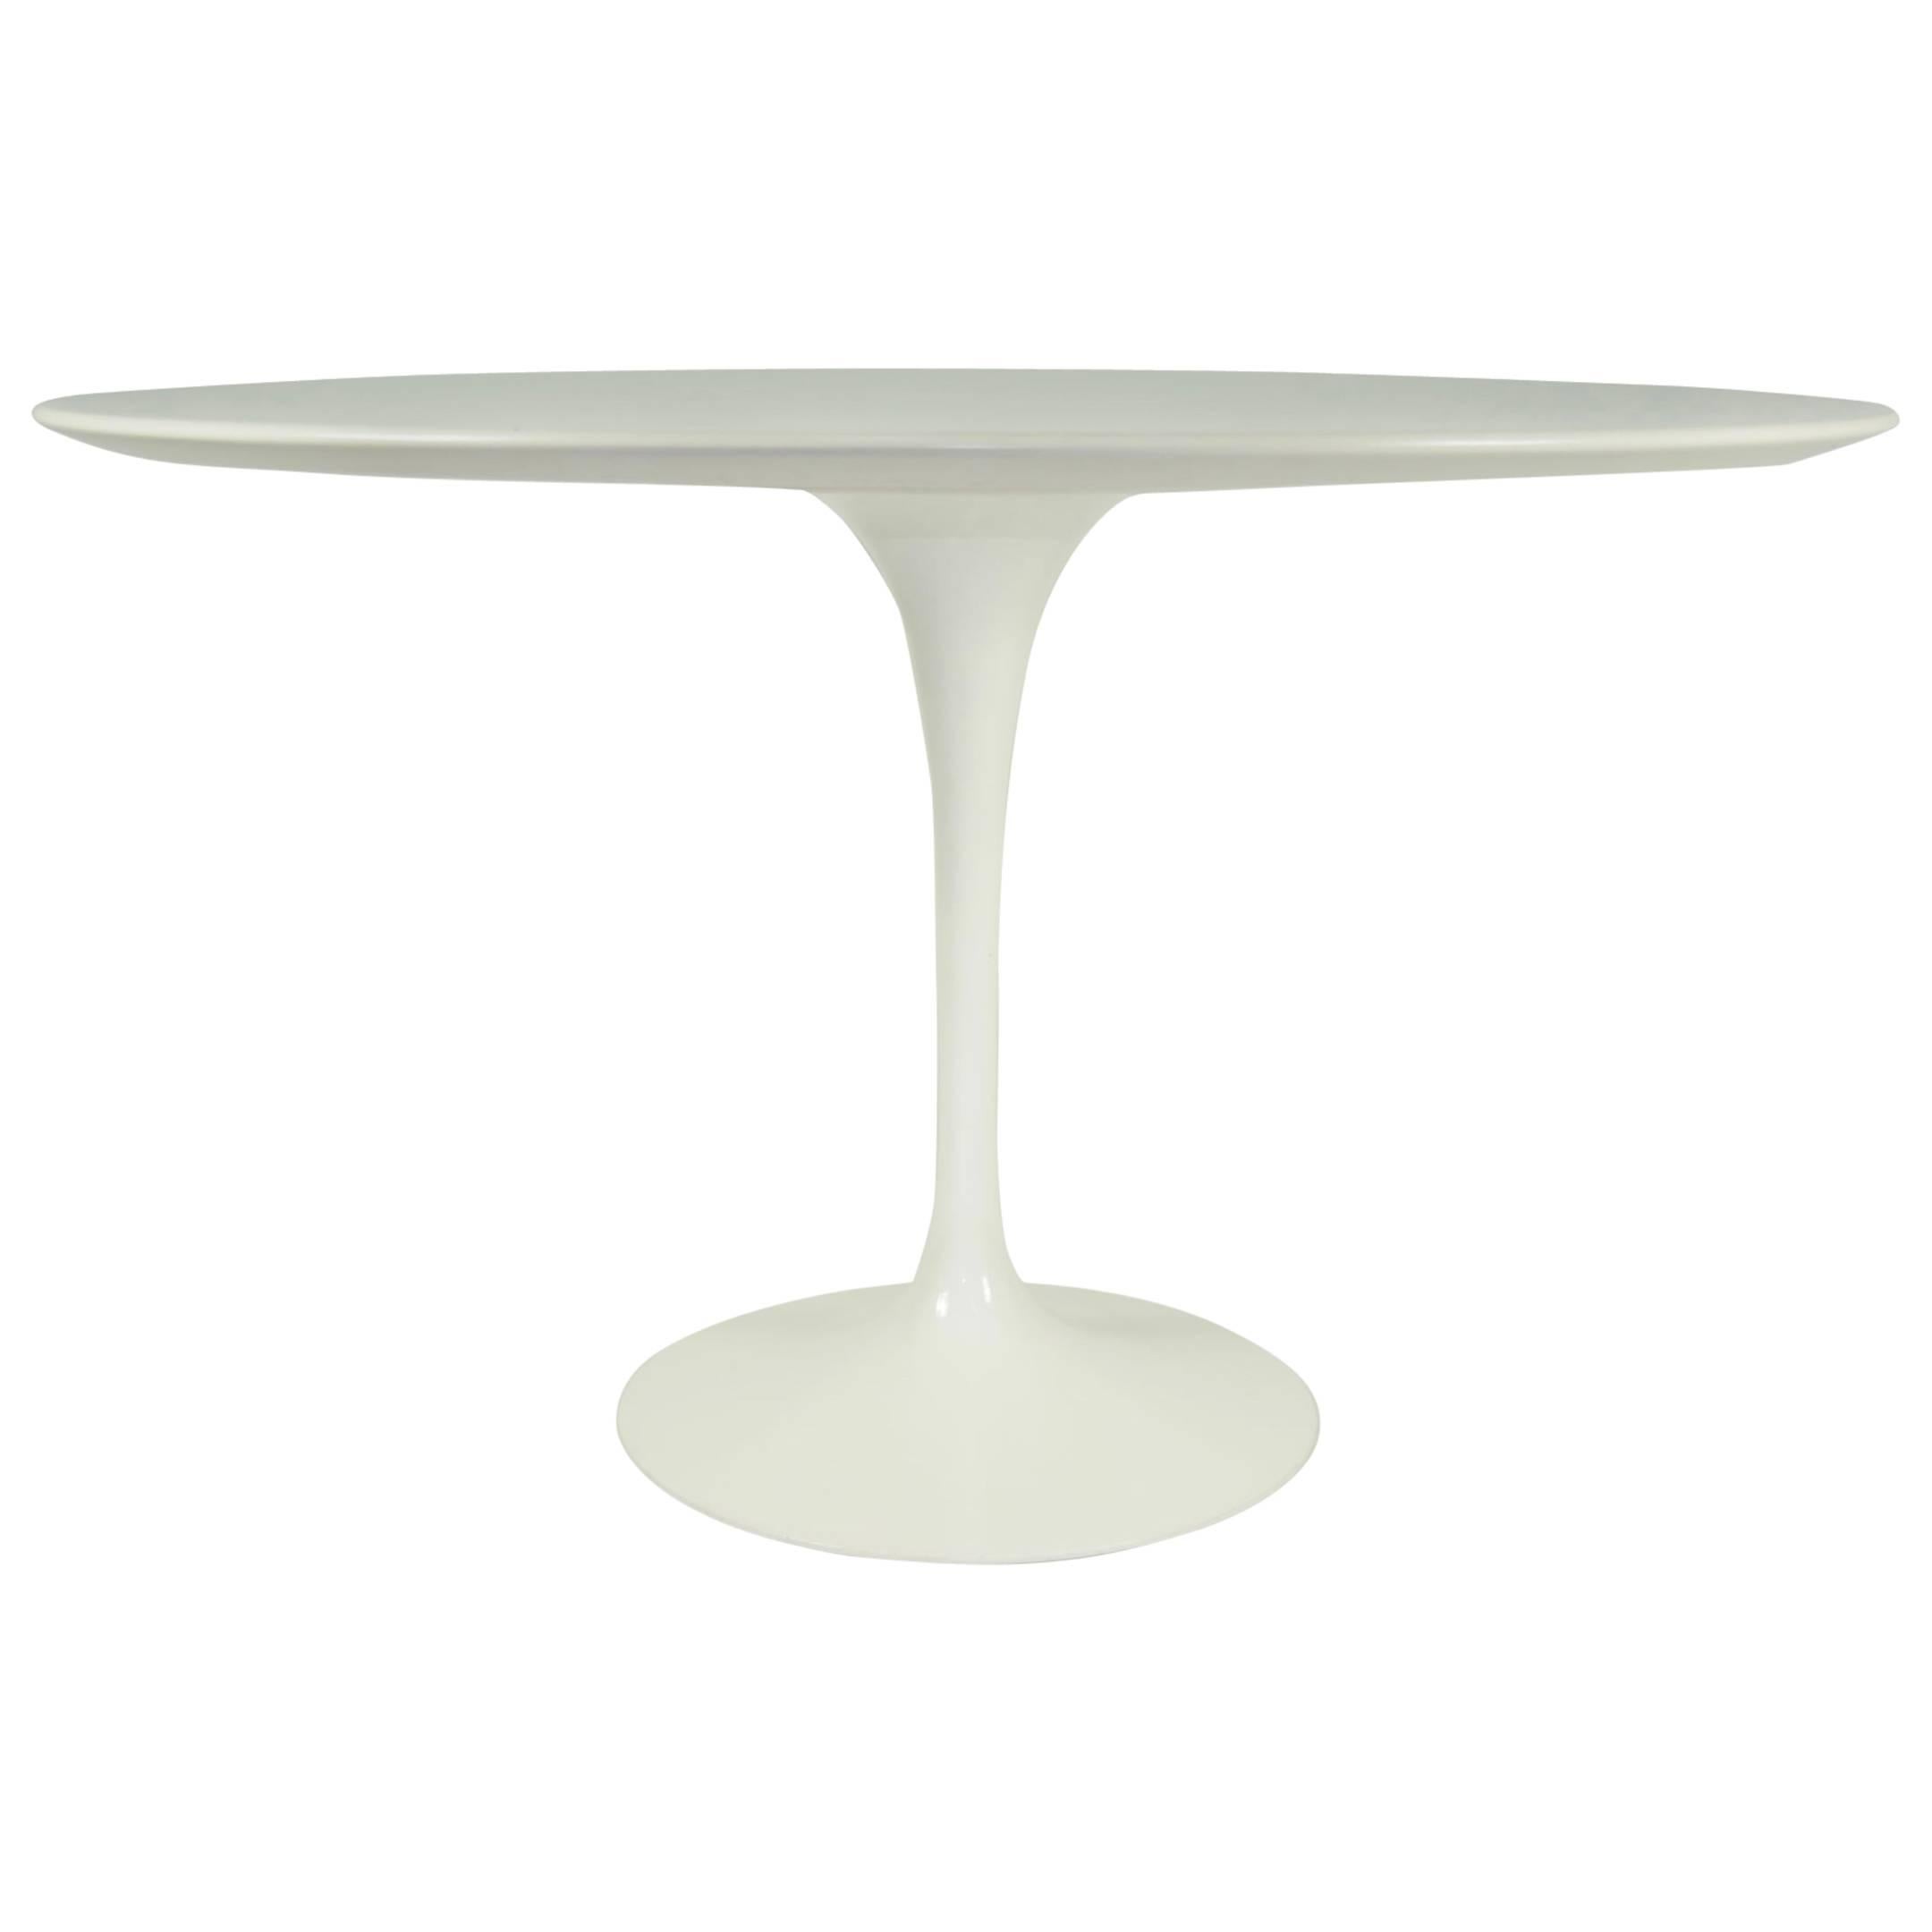 Eero Saarinen for Knoll Tulip Table